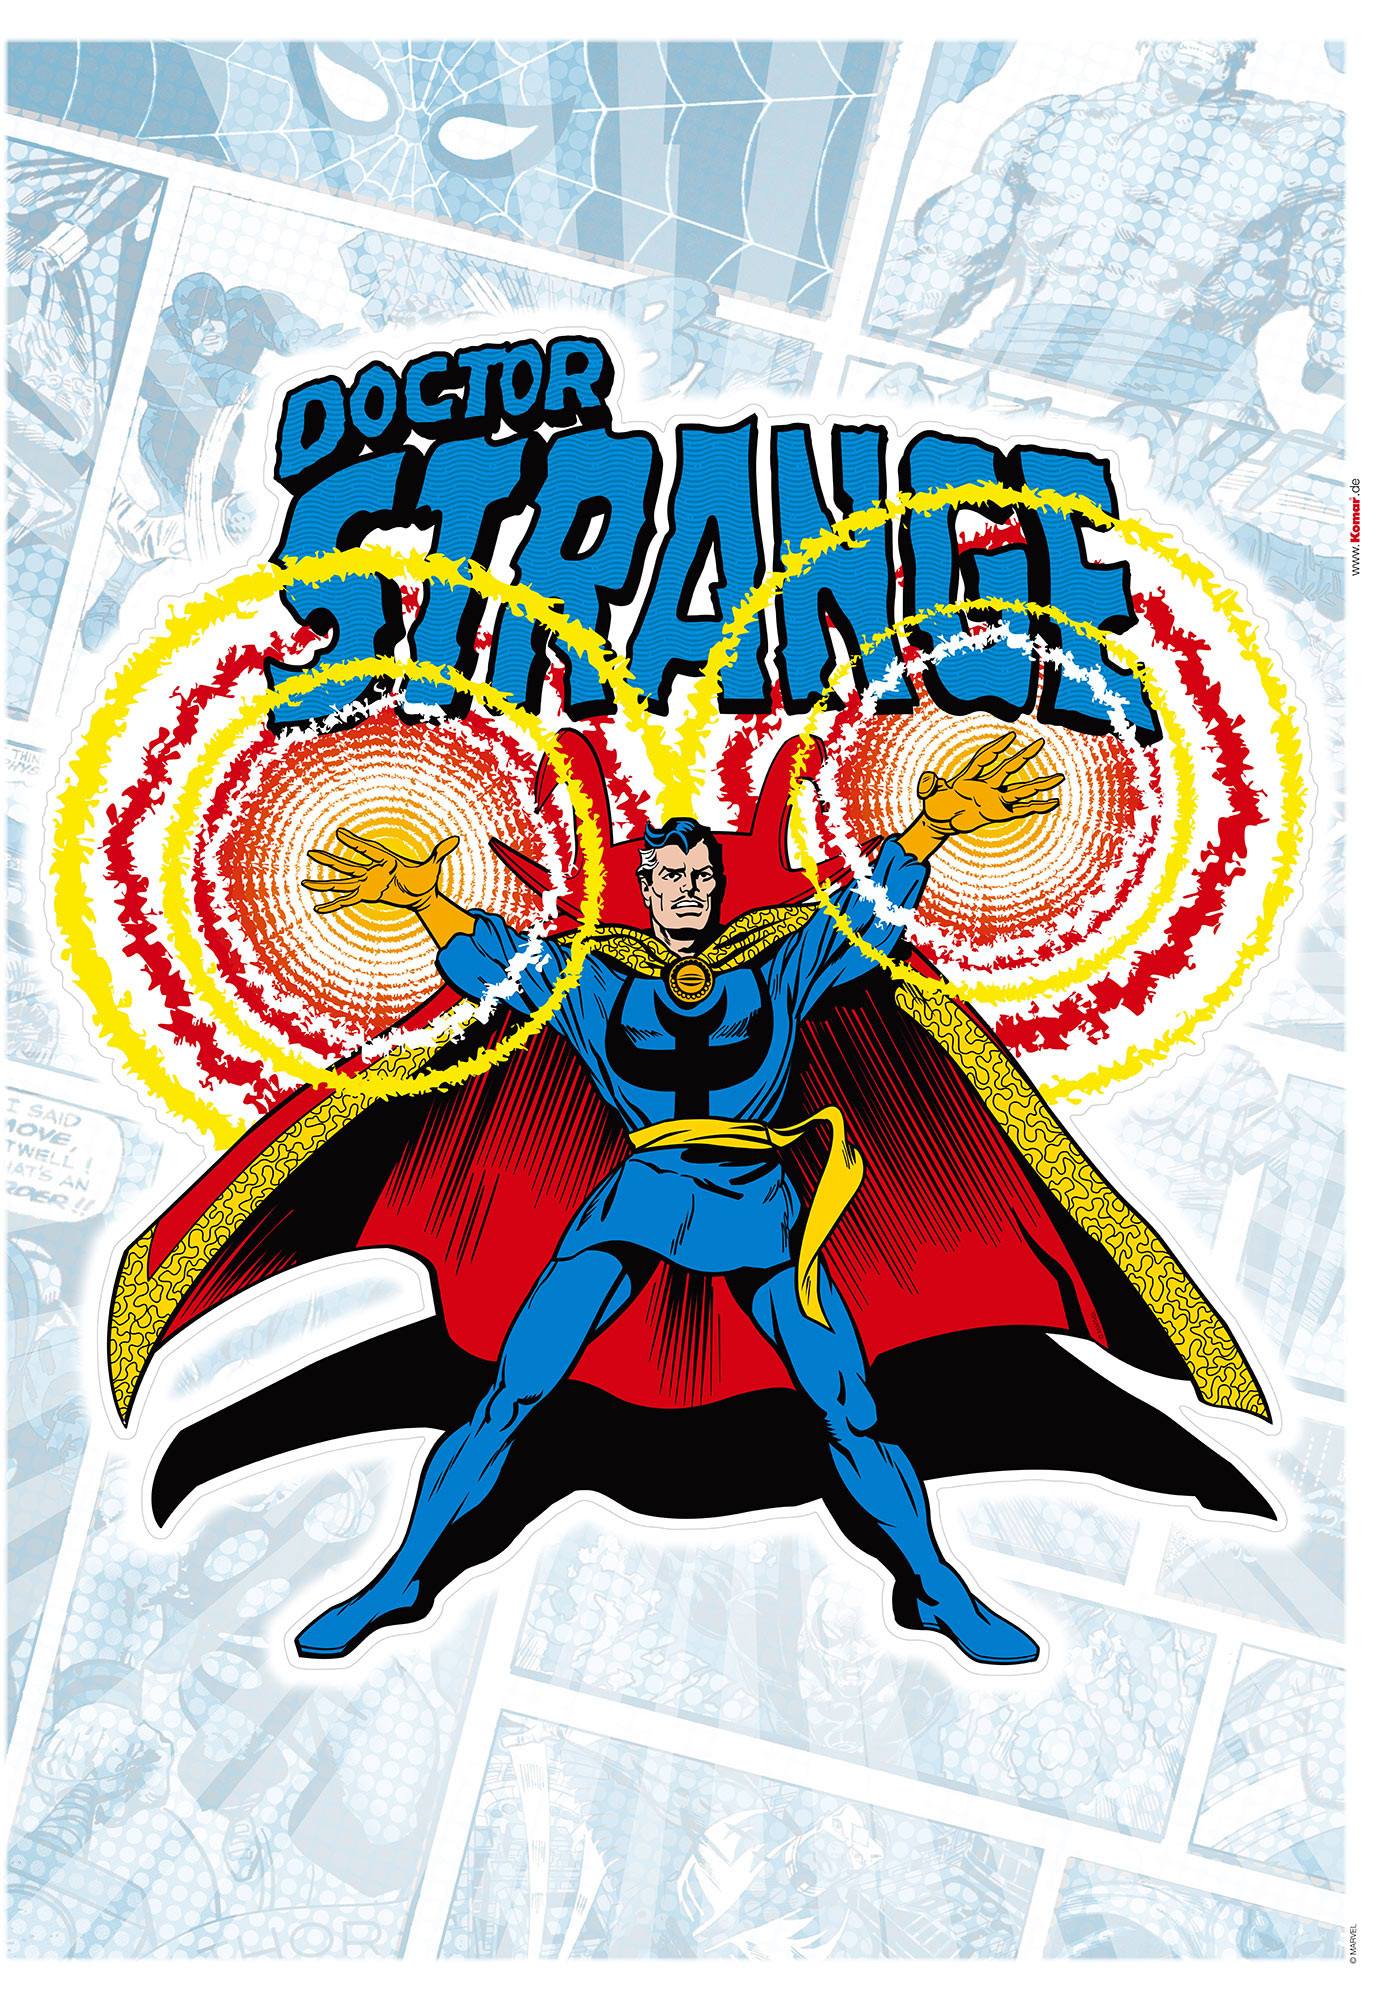 I fumetti per festeggiare i 60 anni del Doctor Strange